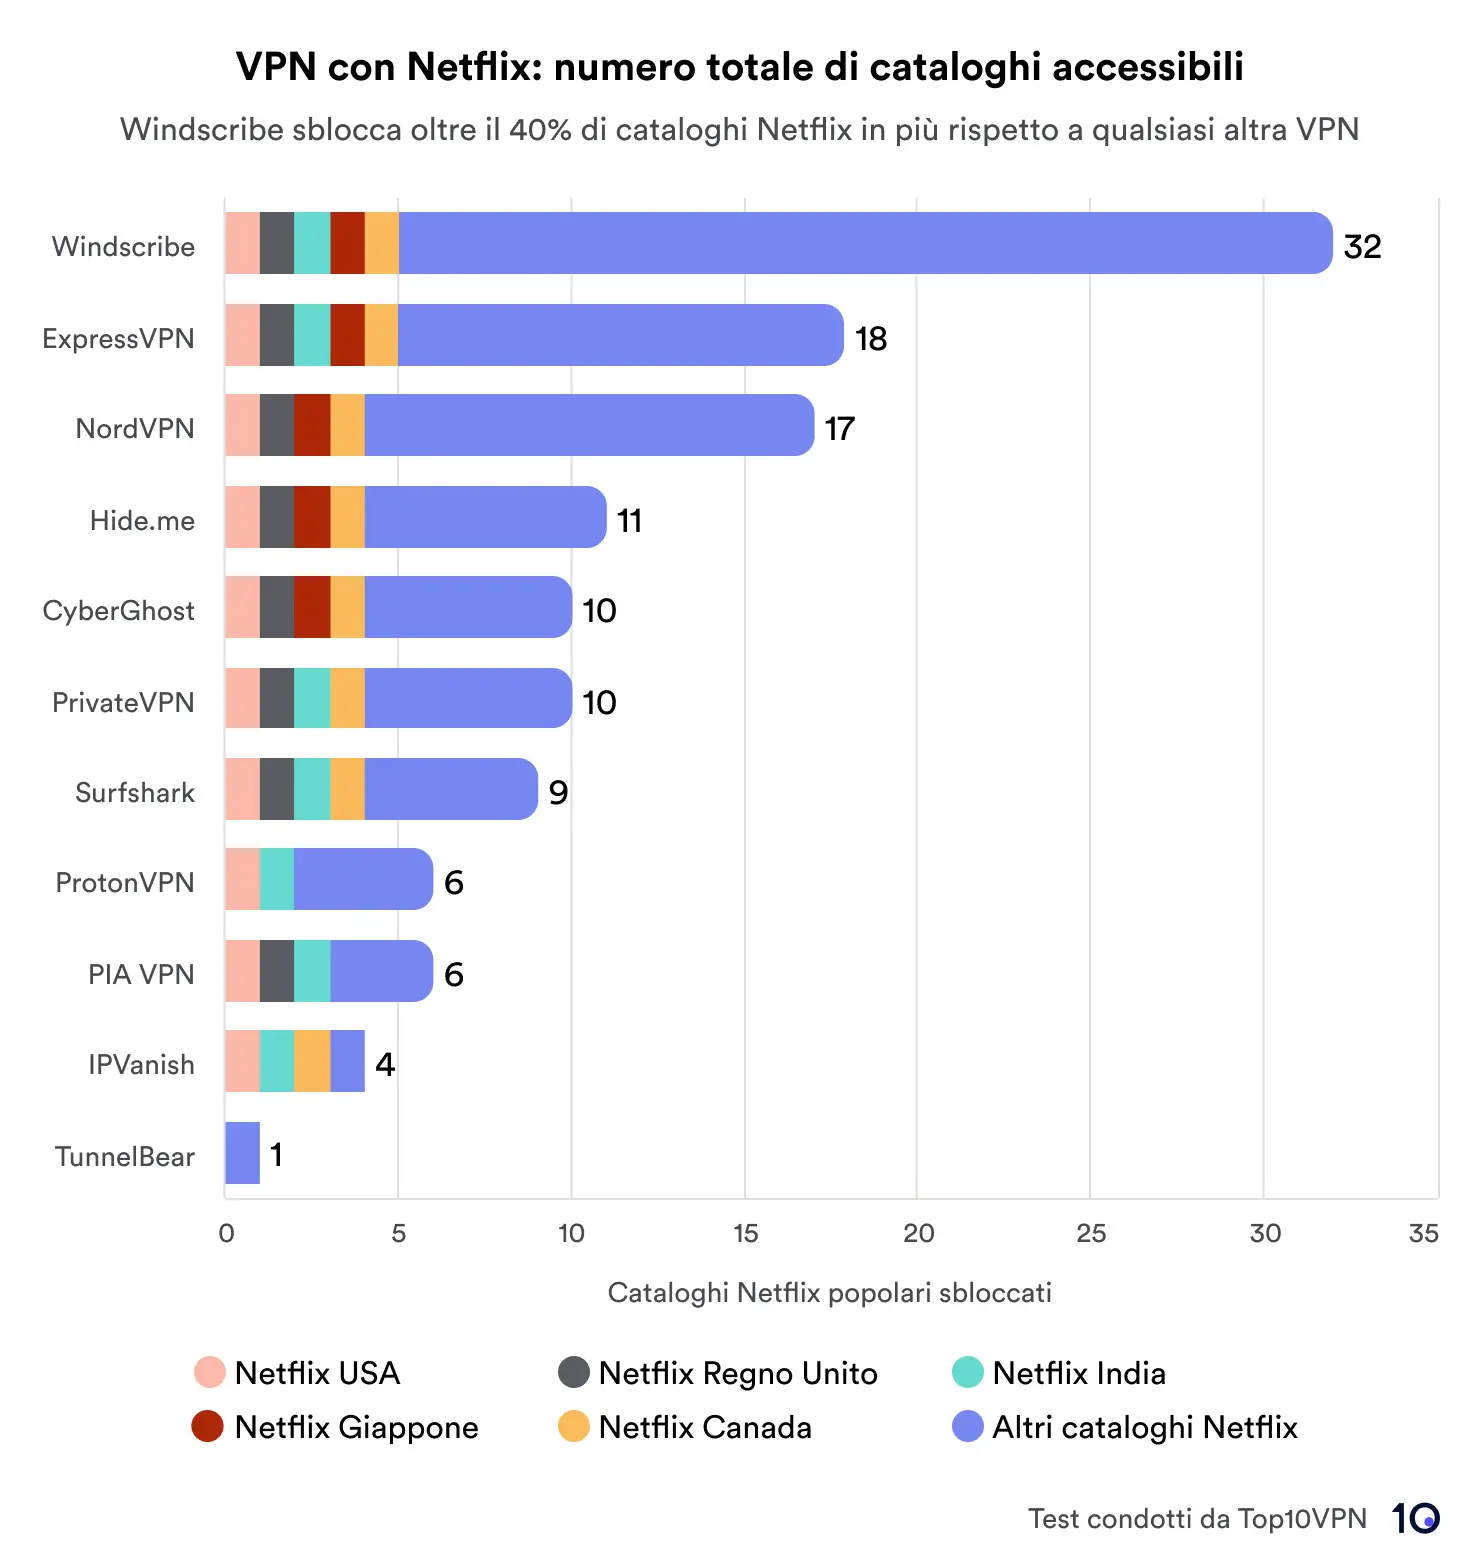 Diagram batang membandingkan layanan VPN berdasarkan jumlah total perpustakaan Netflix yang diakses. Windscribe memimpin dengan 32 perpustakaan, diikuti oleh ExpressVPN dan NordVPN dengan masing-masing 18 dan 17 perpustakaan. Bagan tersebut mencakup wilayah indikasi utama seperti AS, Inggris, Jepang, Kanada, India, dan lainnya.